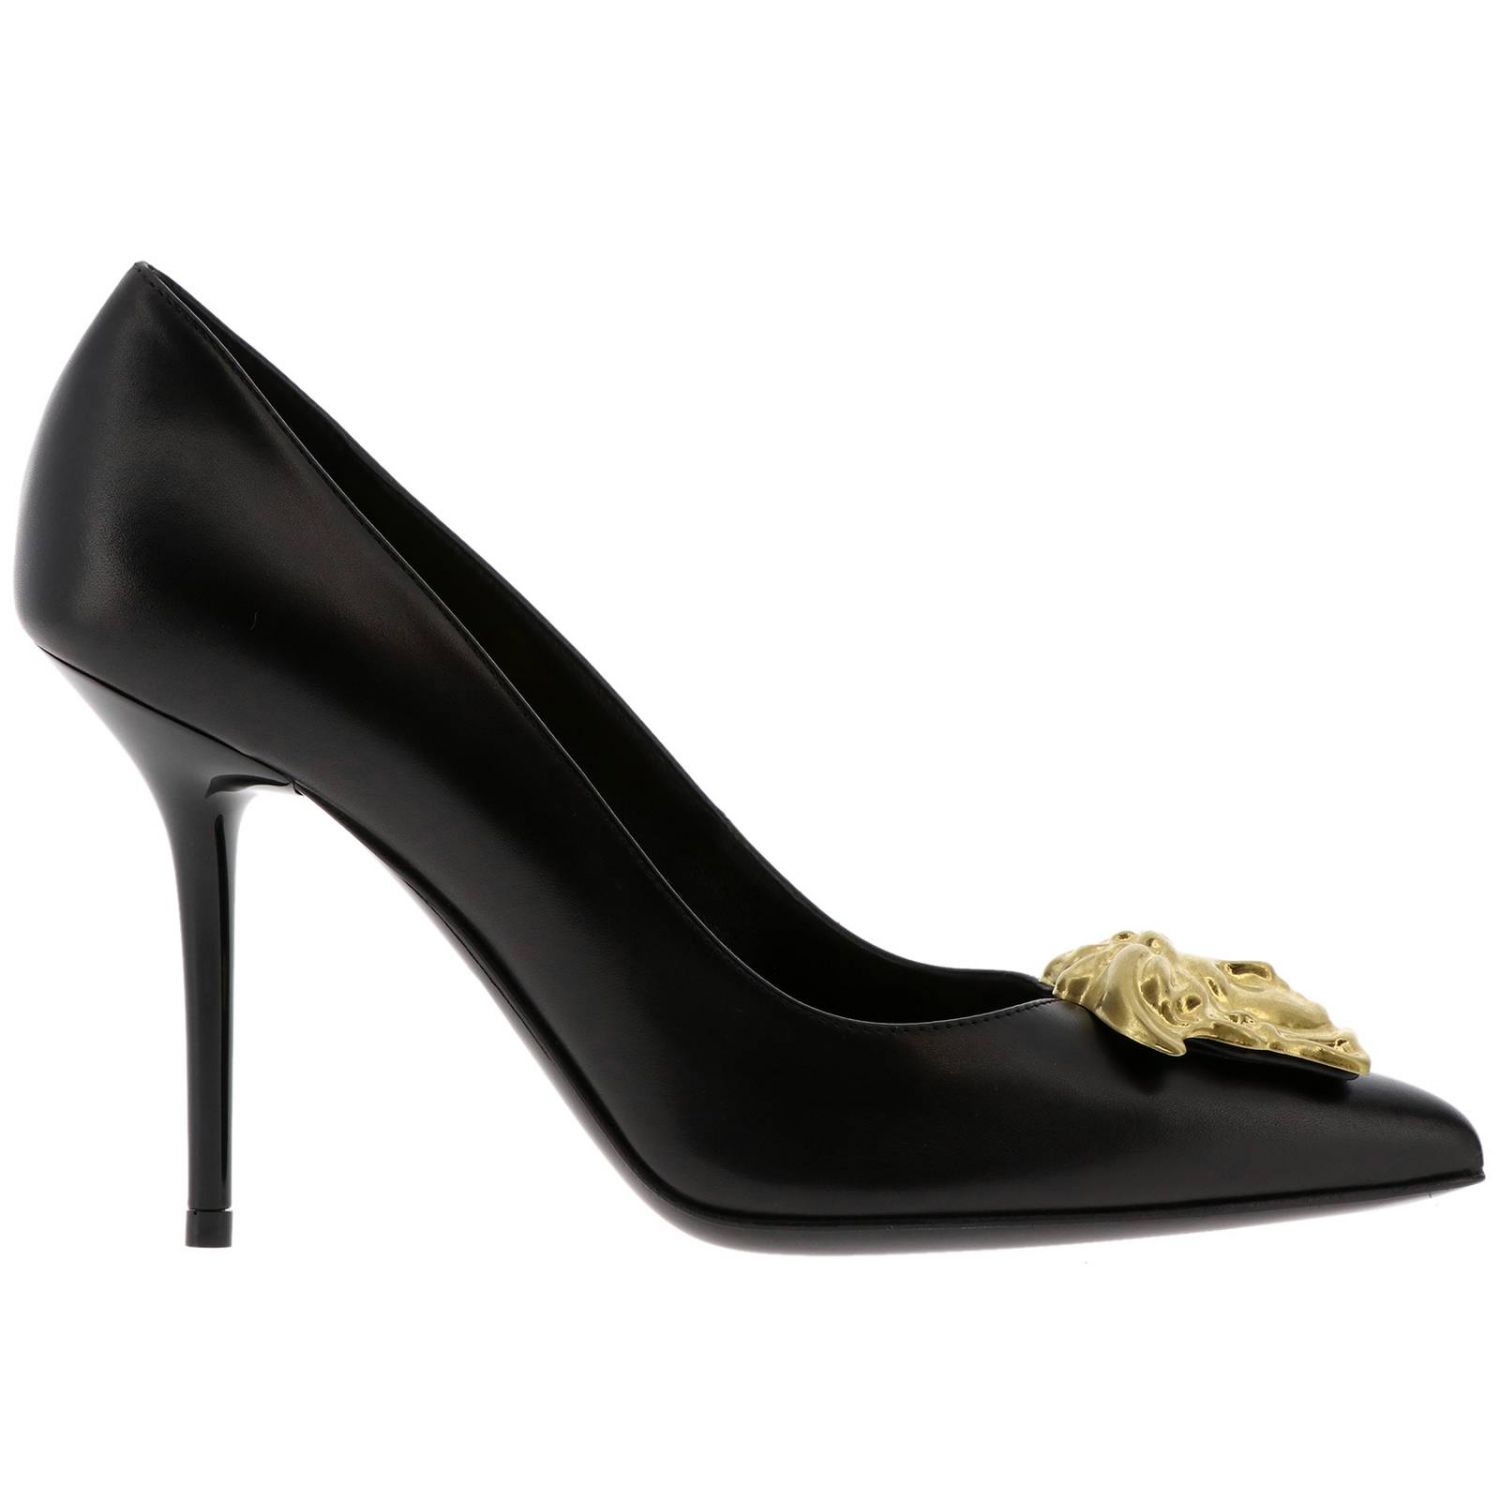 Versace Outlet: Shoes women - Black | Pumps Versace DSL963N DVT2PB ...